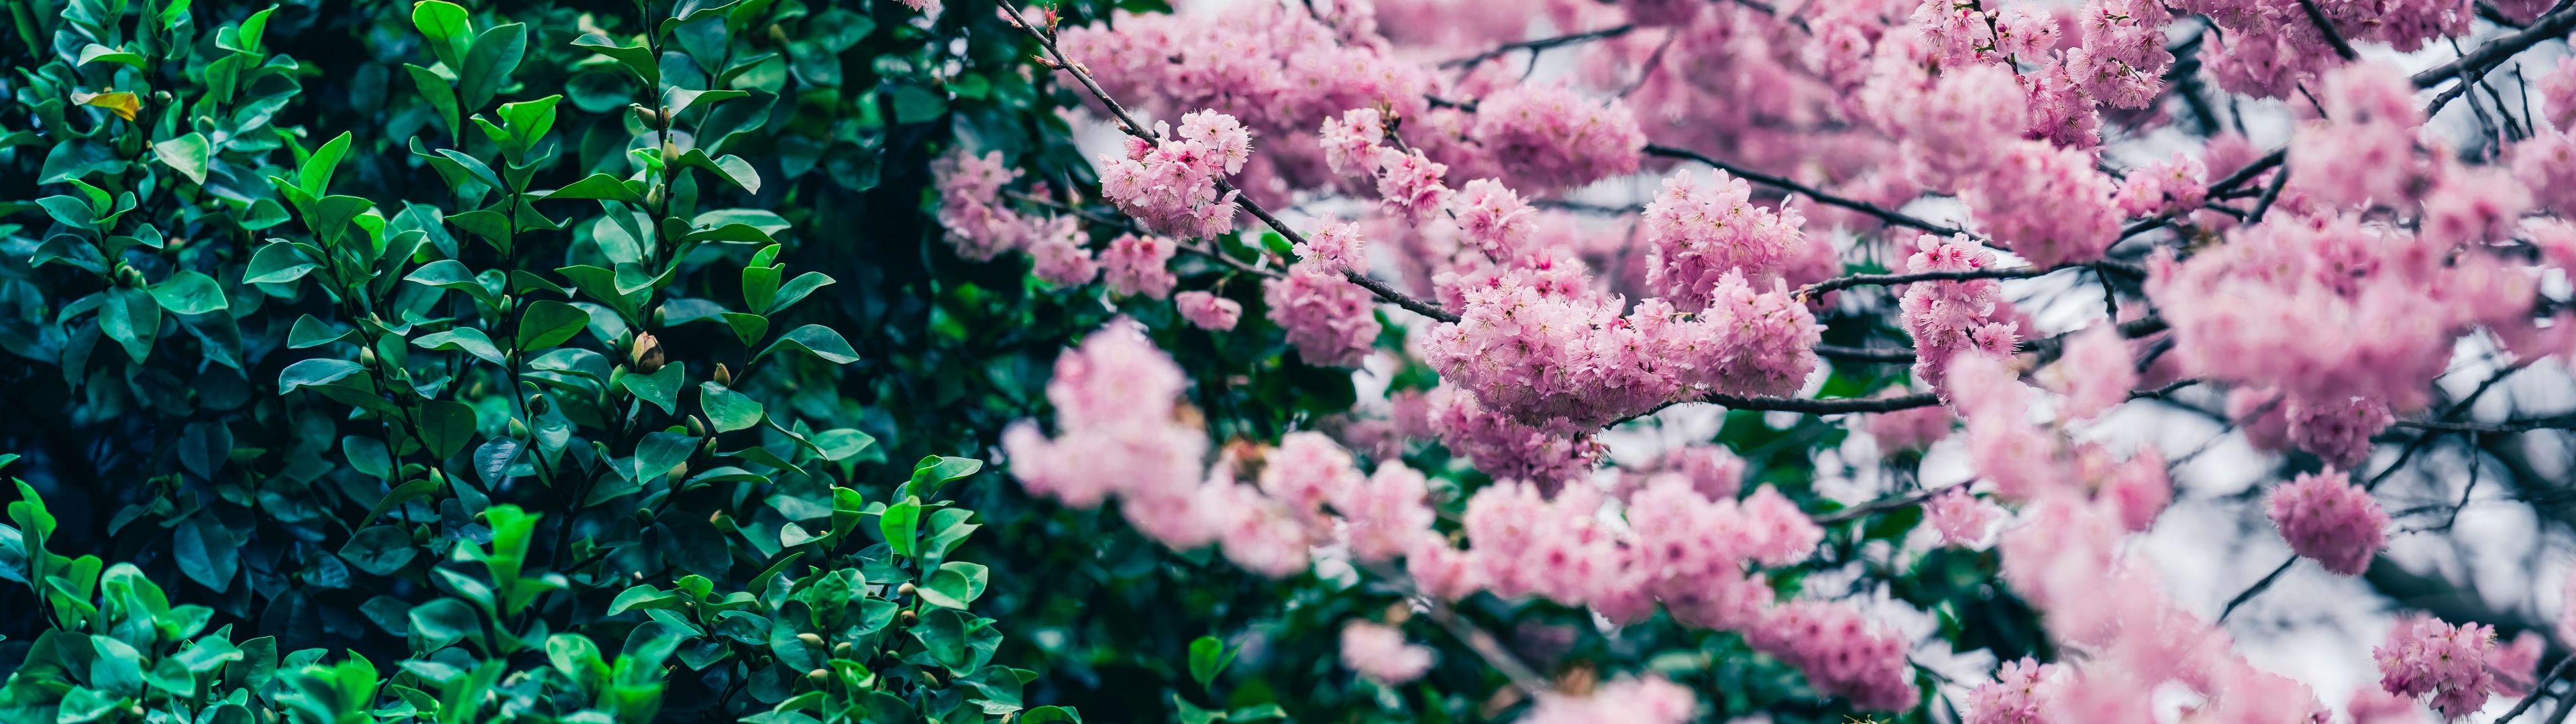 Hãy cảm nhận cơn gió mùa xuân mang theo những cánh hoa anh đào tuyệt đẹp với bức ảnh này. Đây chắc chắn là món quà ý nghĩa dành cho bạn.